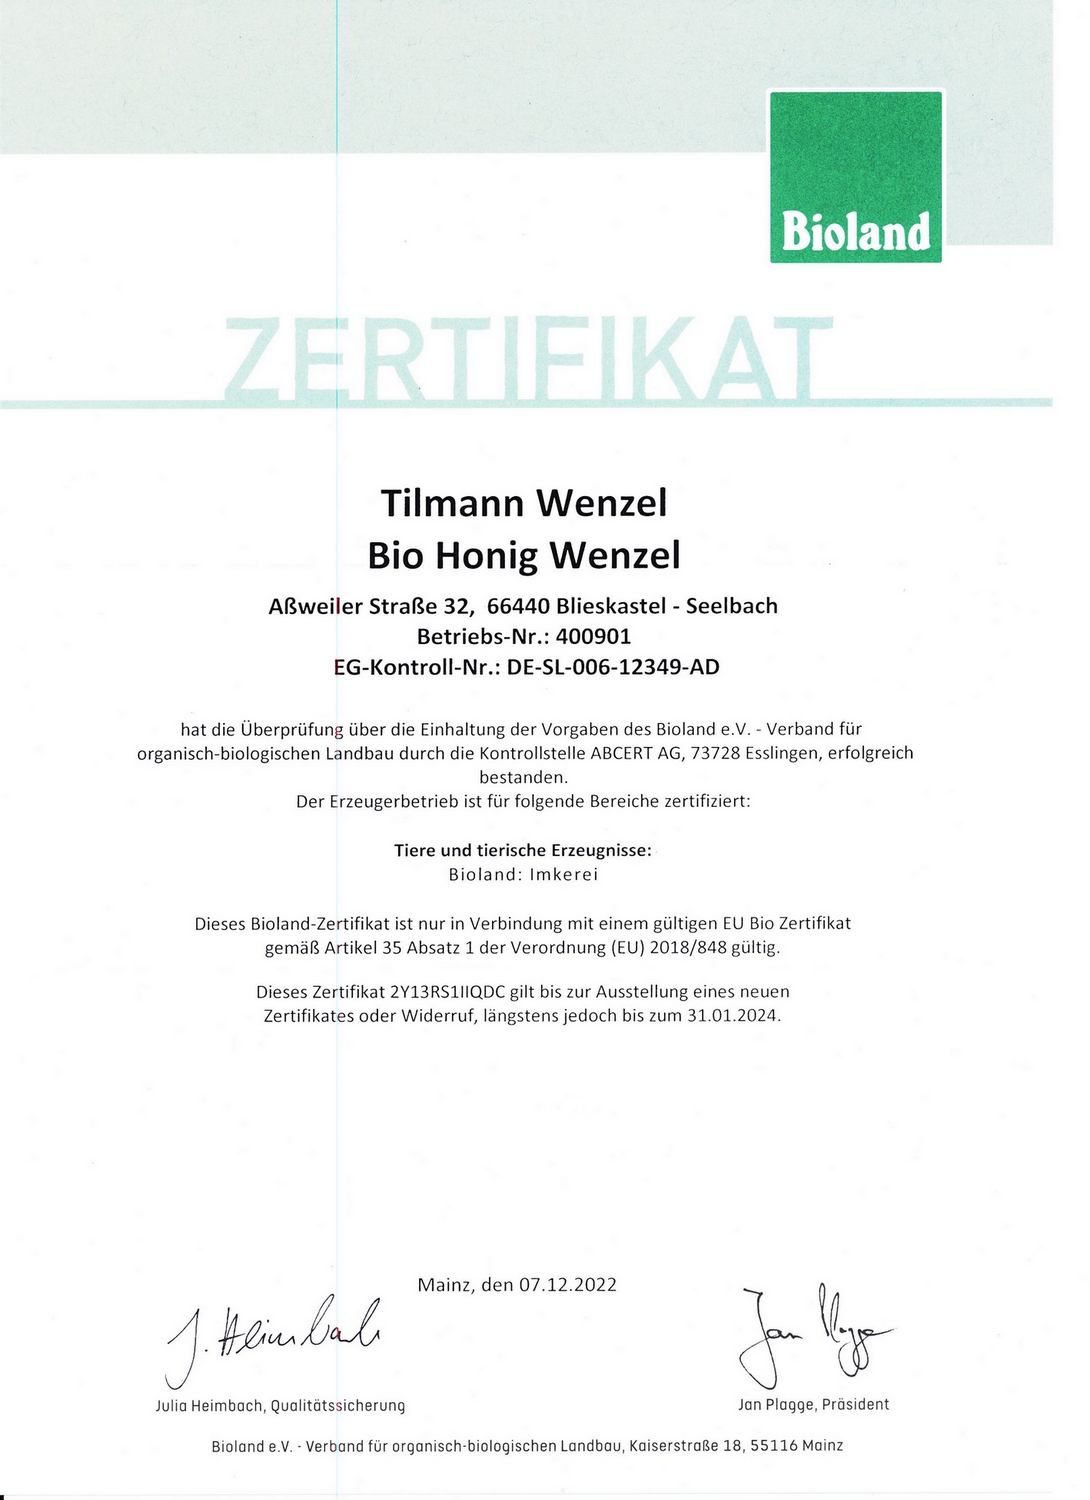 Bioland-Zertifikat Biohonig Wenzel